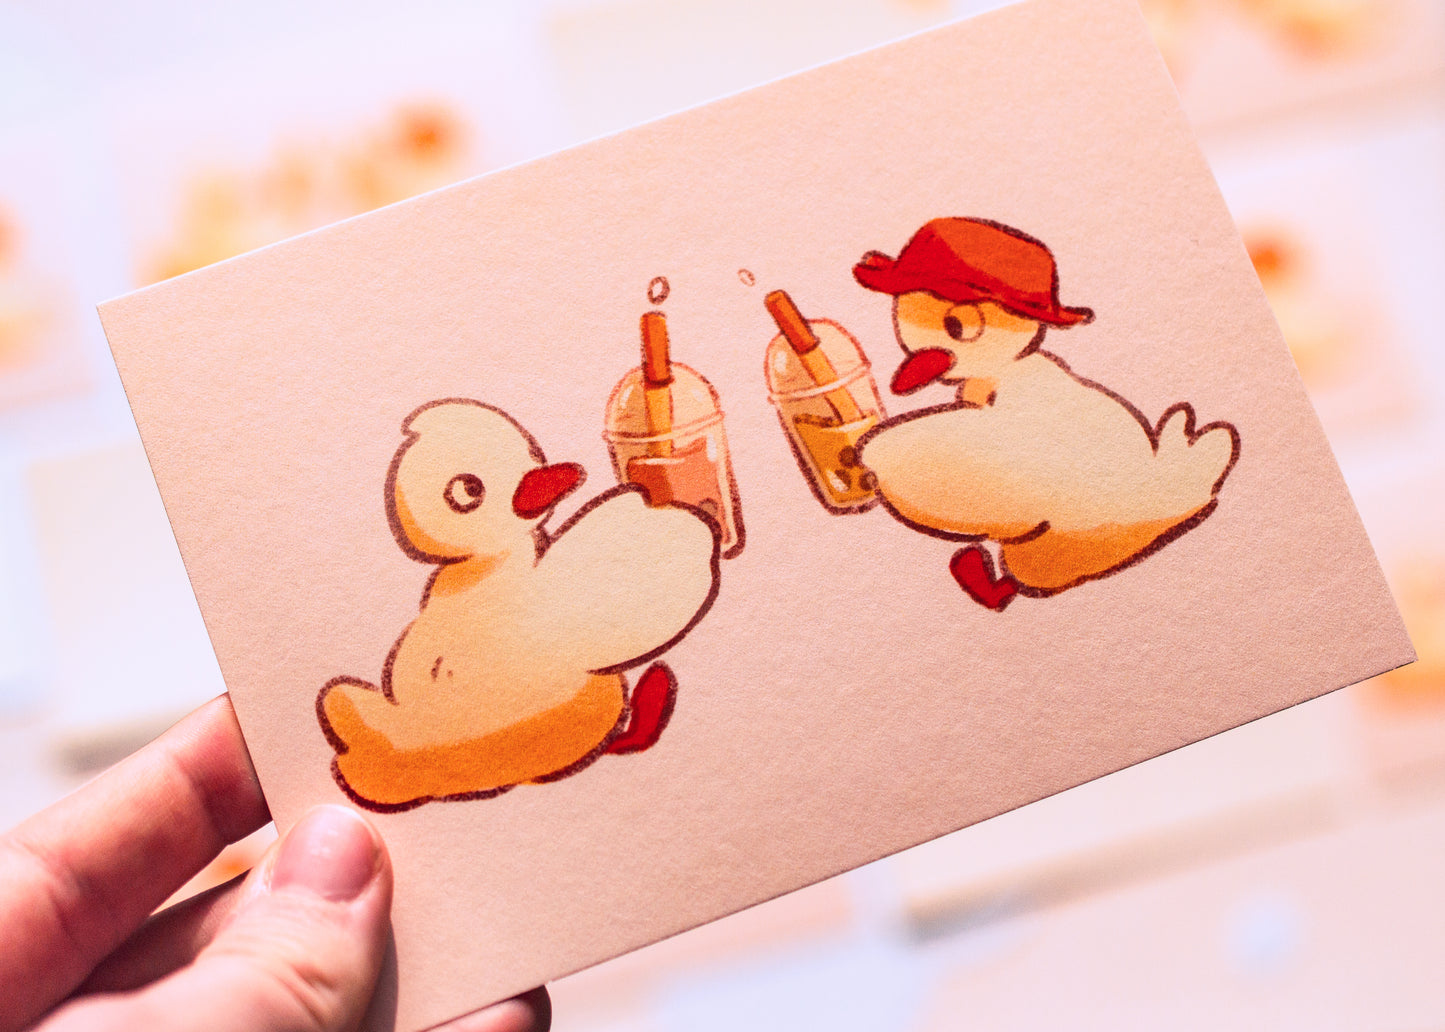 Mini prints - Bubble tea ducks